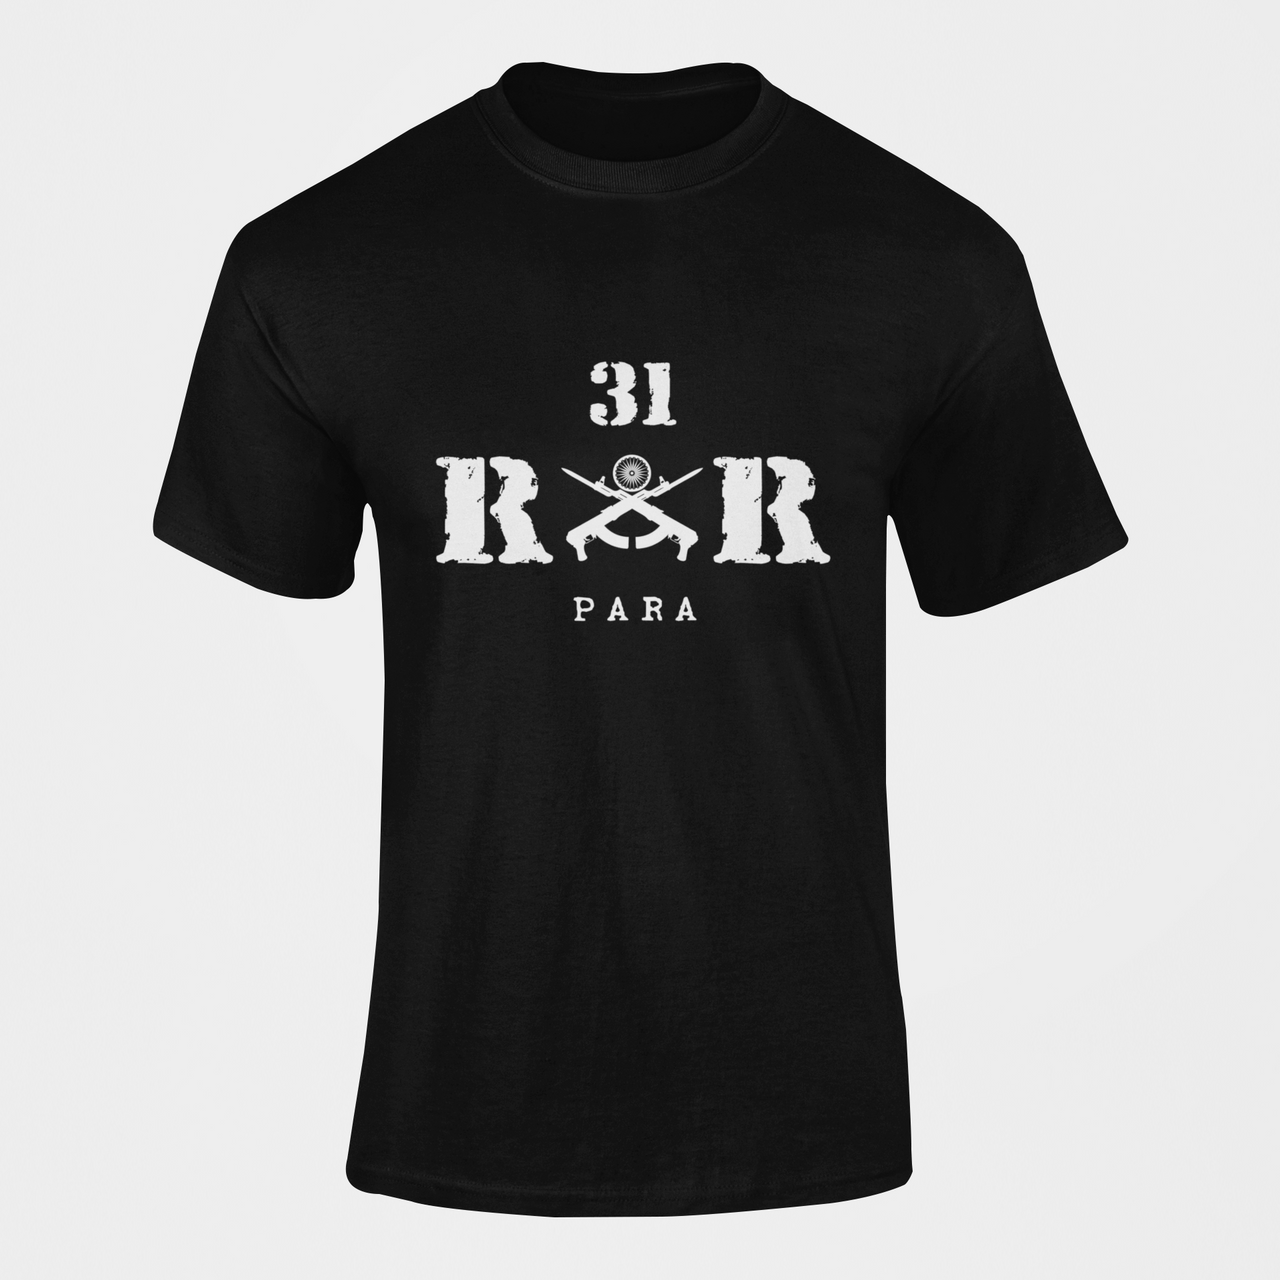 Rashtriya Rifles T-shirt - 31 RR (Men)